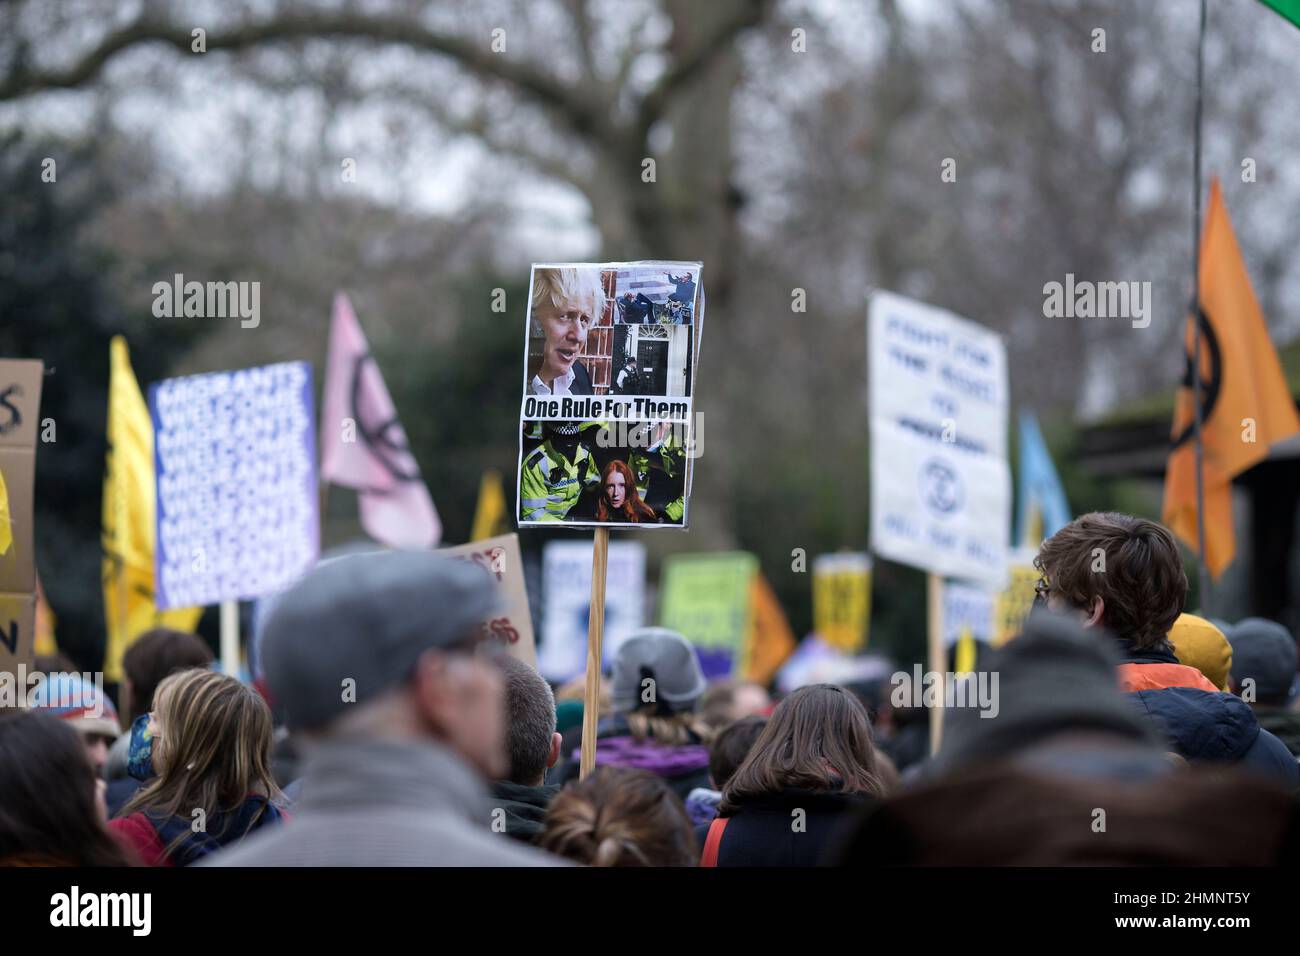 Los participantes se reúnen y marchan durante una manifestación de Kill the Bill contra la Ley de Policía, Crimen, Sentencias y Tribunales en el centro de Londres. Foto de stock